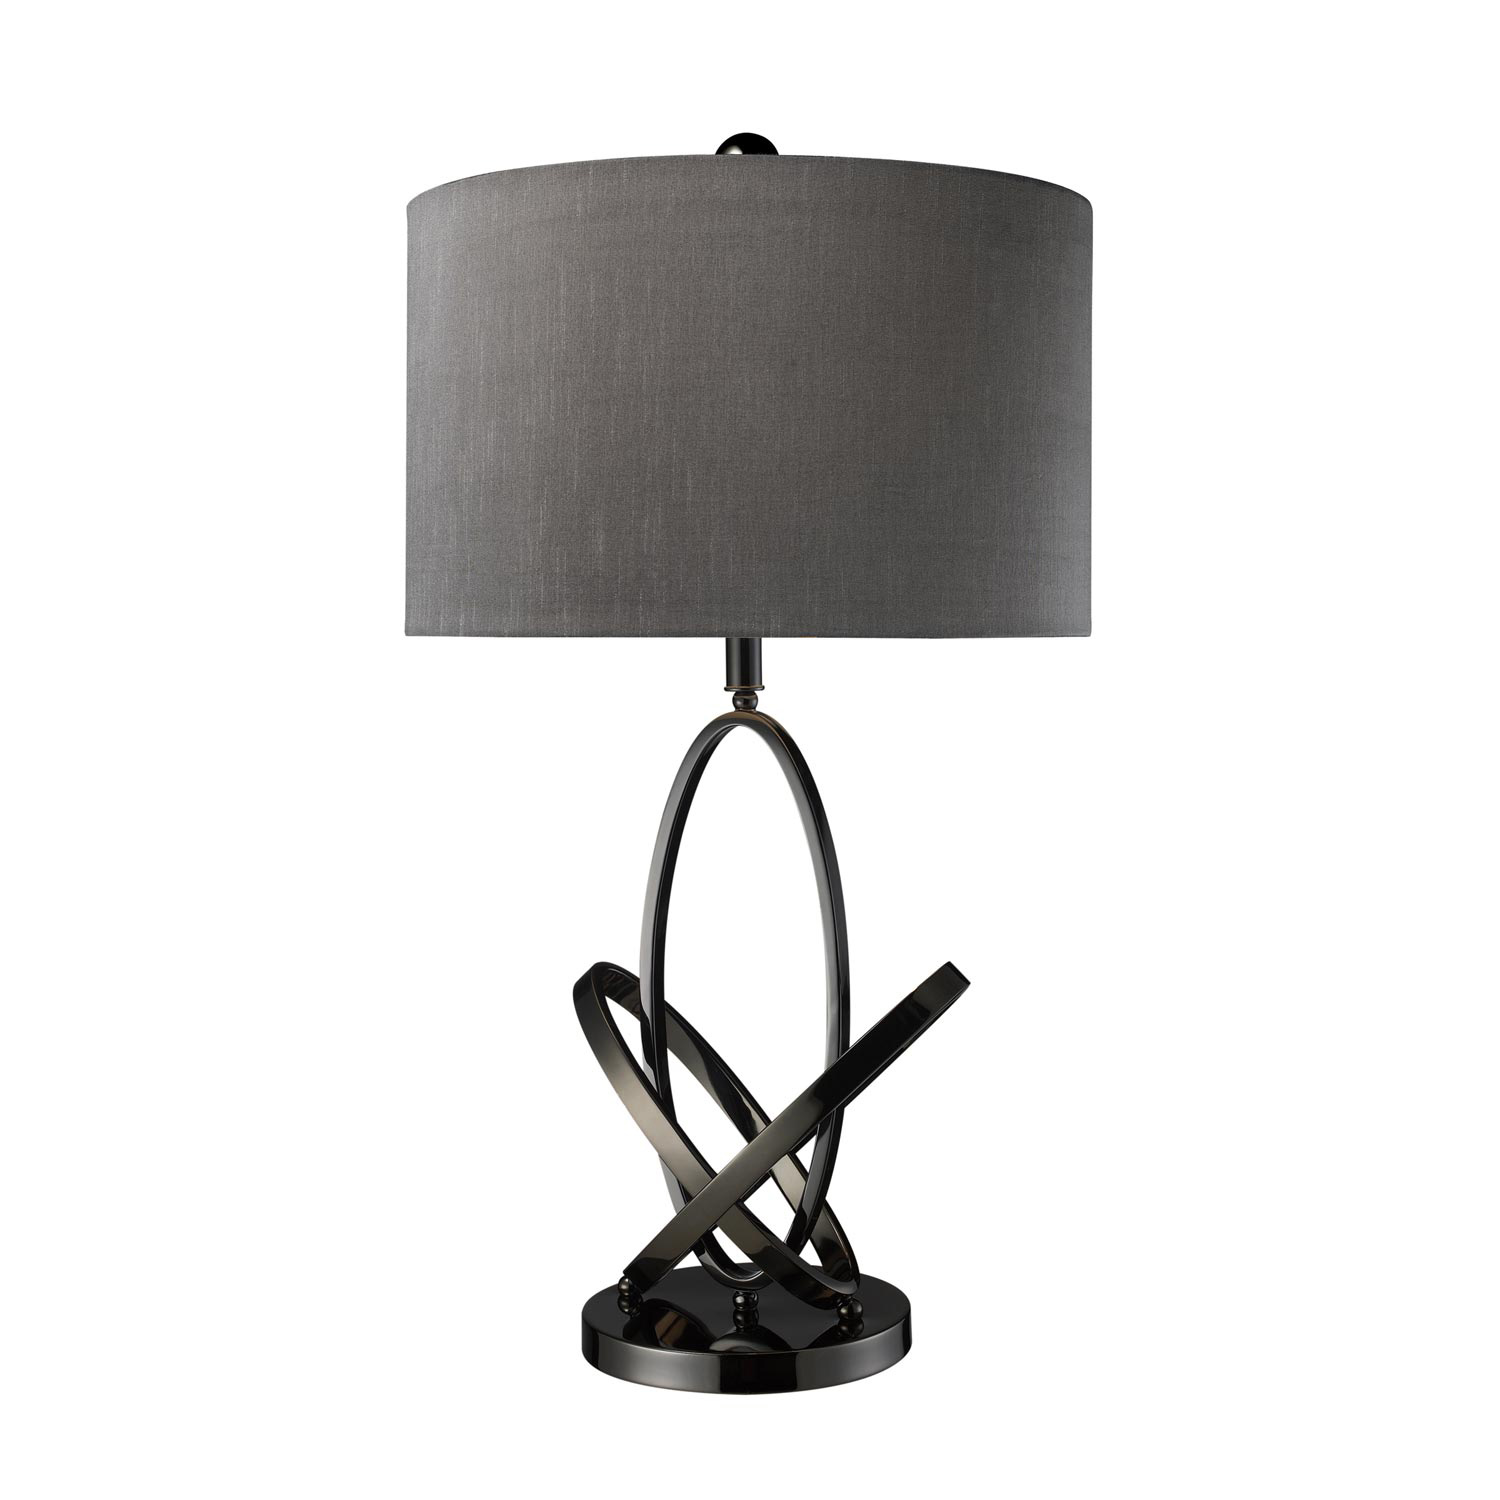 Elk Lighting D1874 Kinetic Table Lamp - Black Nickel